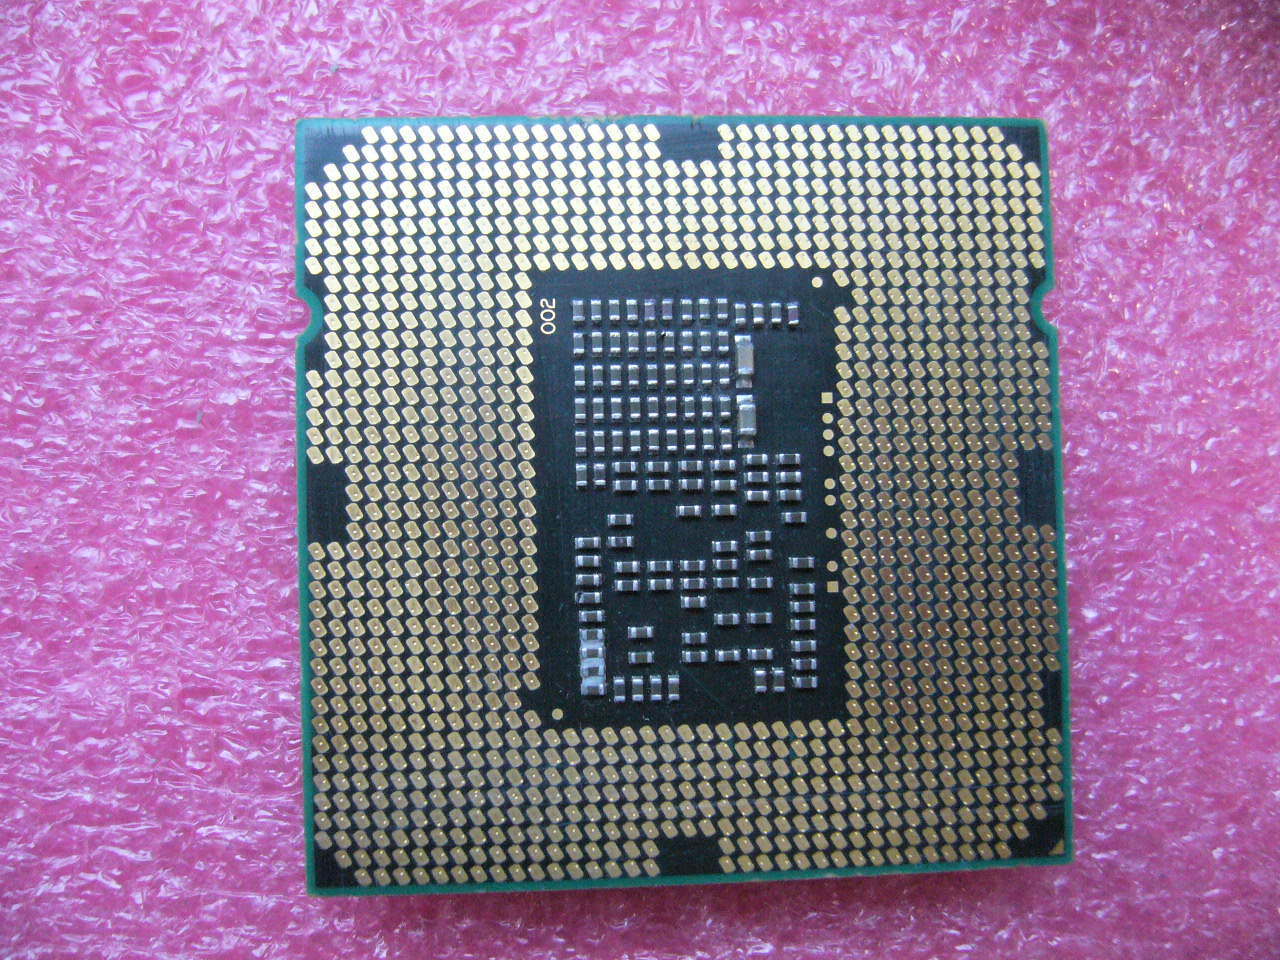 QTY 1x INTEL i3-560 Dual Core CPU 3.33GHZ/4MB LGA1156 SLBY2 - Click Image to Close